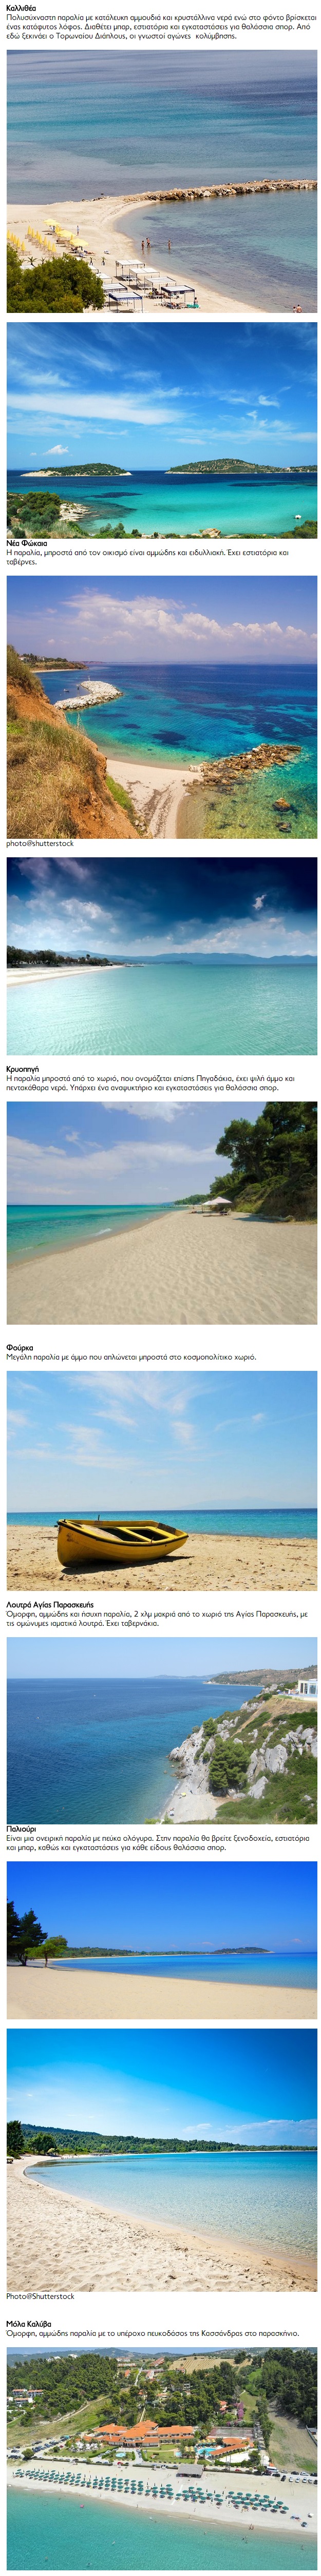 tilestwra.com | Οι 40 καλύτερες παραλίες της Χαλκιδική σε μια μοναδική συλλογή